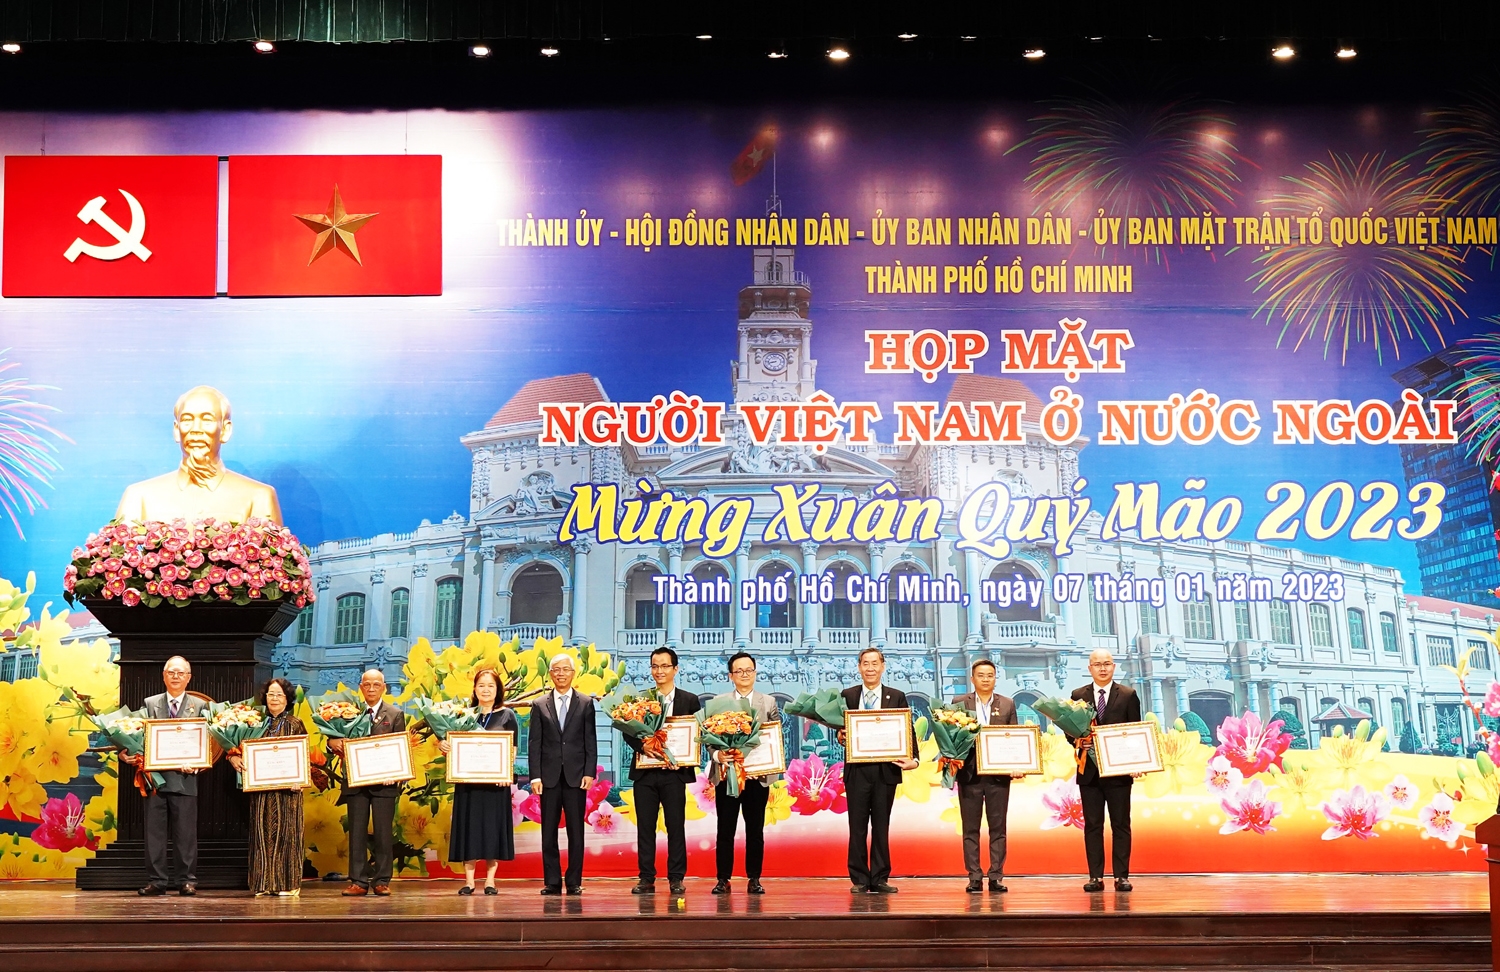 Đại diện lãnh đạo Thành phố trao tặng Bằng khen cho các cá nhân và tổ chức có thành tích xuất sắc liên tục nhiều năm trong công tác người Việt Nam tại nước ngoài trong giai đoạn 2019 - 2022